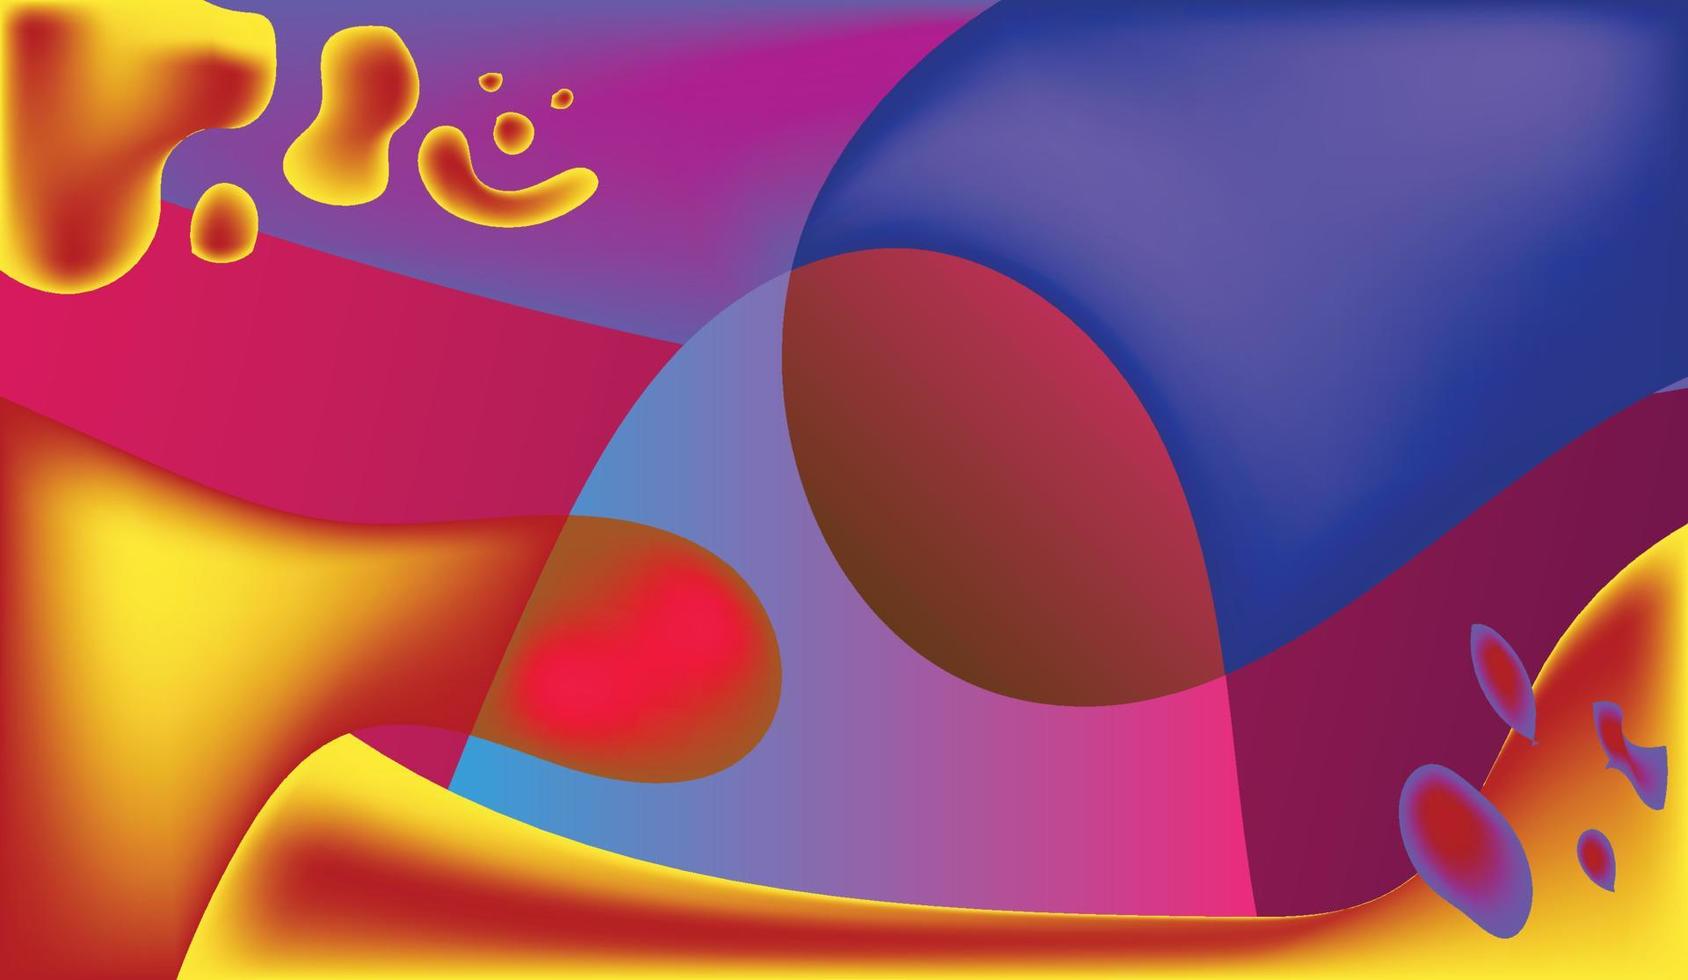 Hintergrunddesign mit Farbverlauf. abstrakter geometrischer hintergrund mit flüssigen formen. Cooles Hintergrunddesign für Poster. eps10-Vektorillustration. vektor